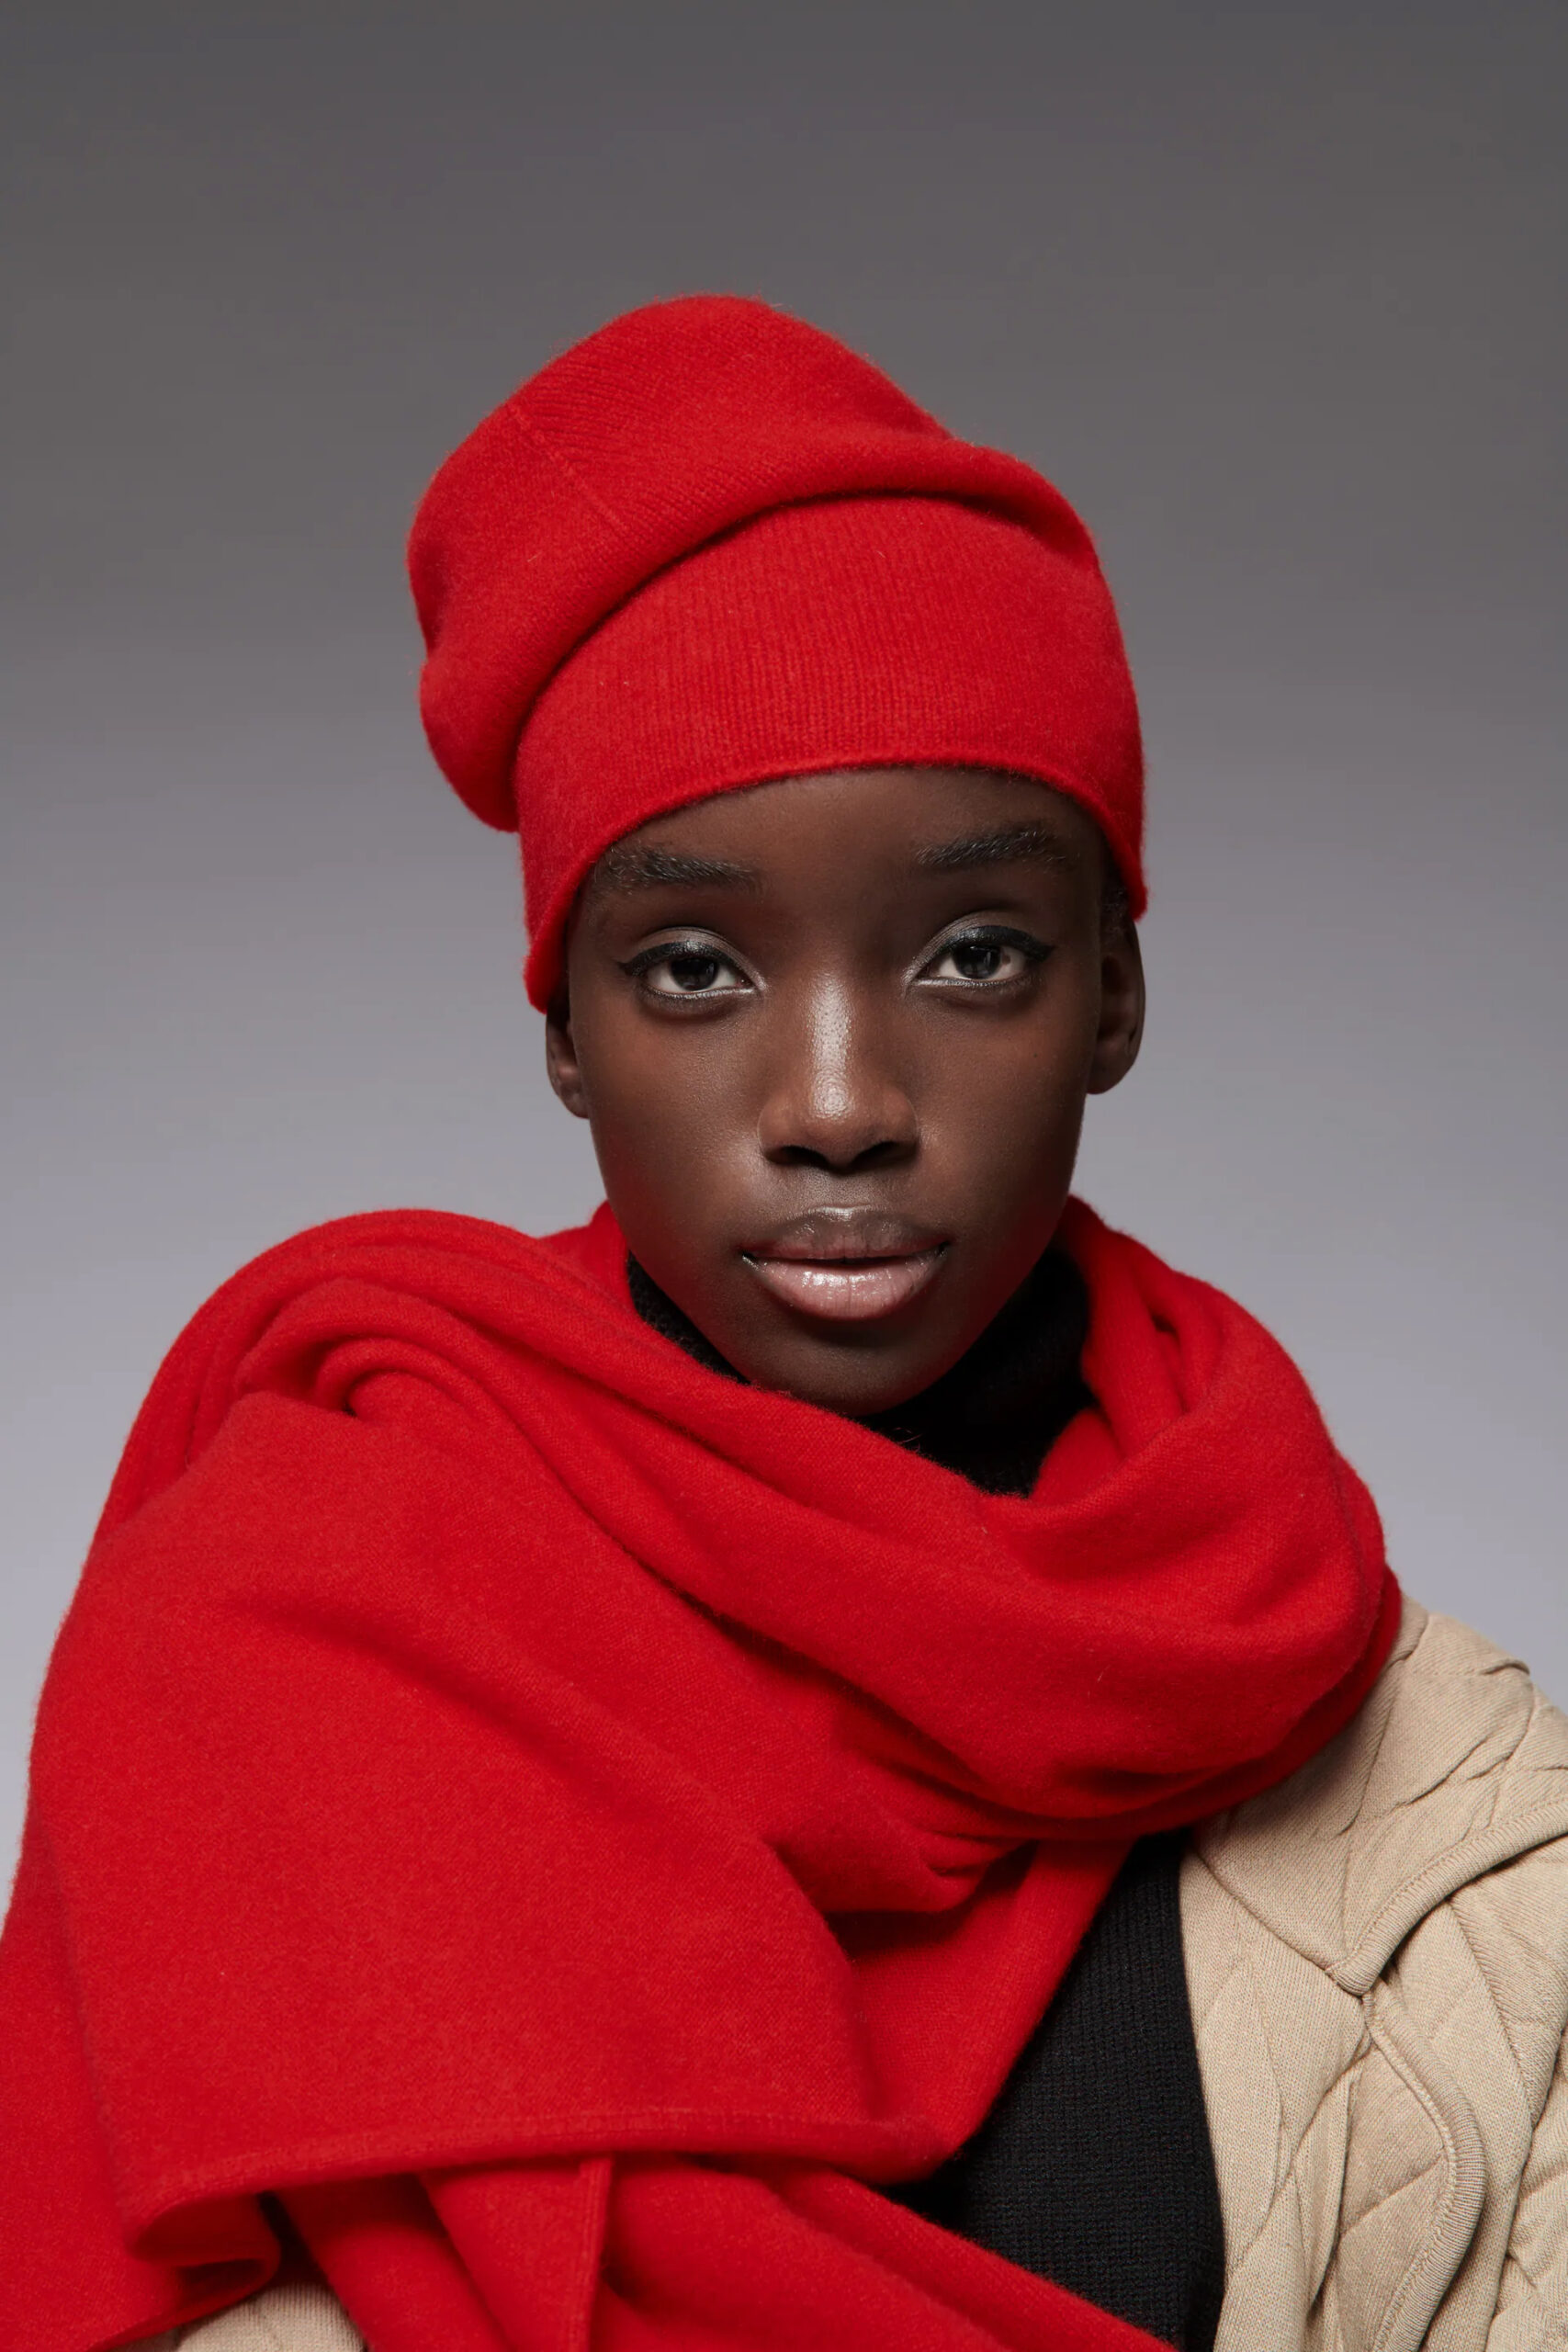 модный головной убор зима 2021 2022 теплое на голову шапка бини гладкая красная